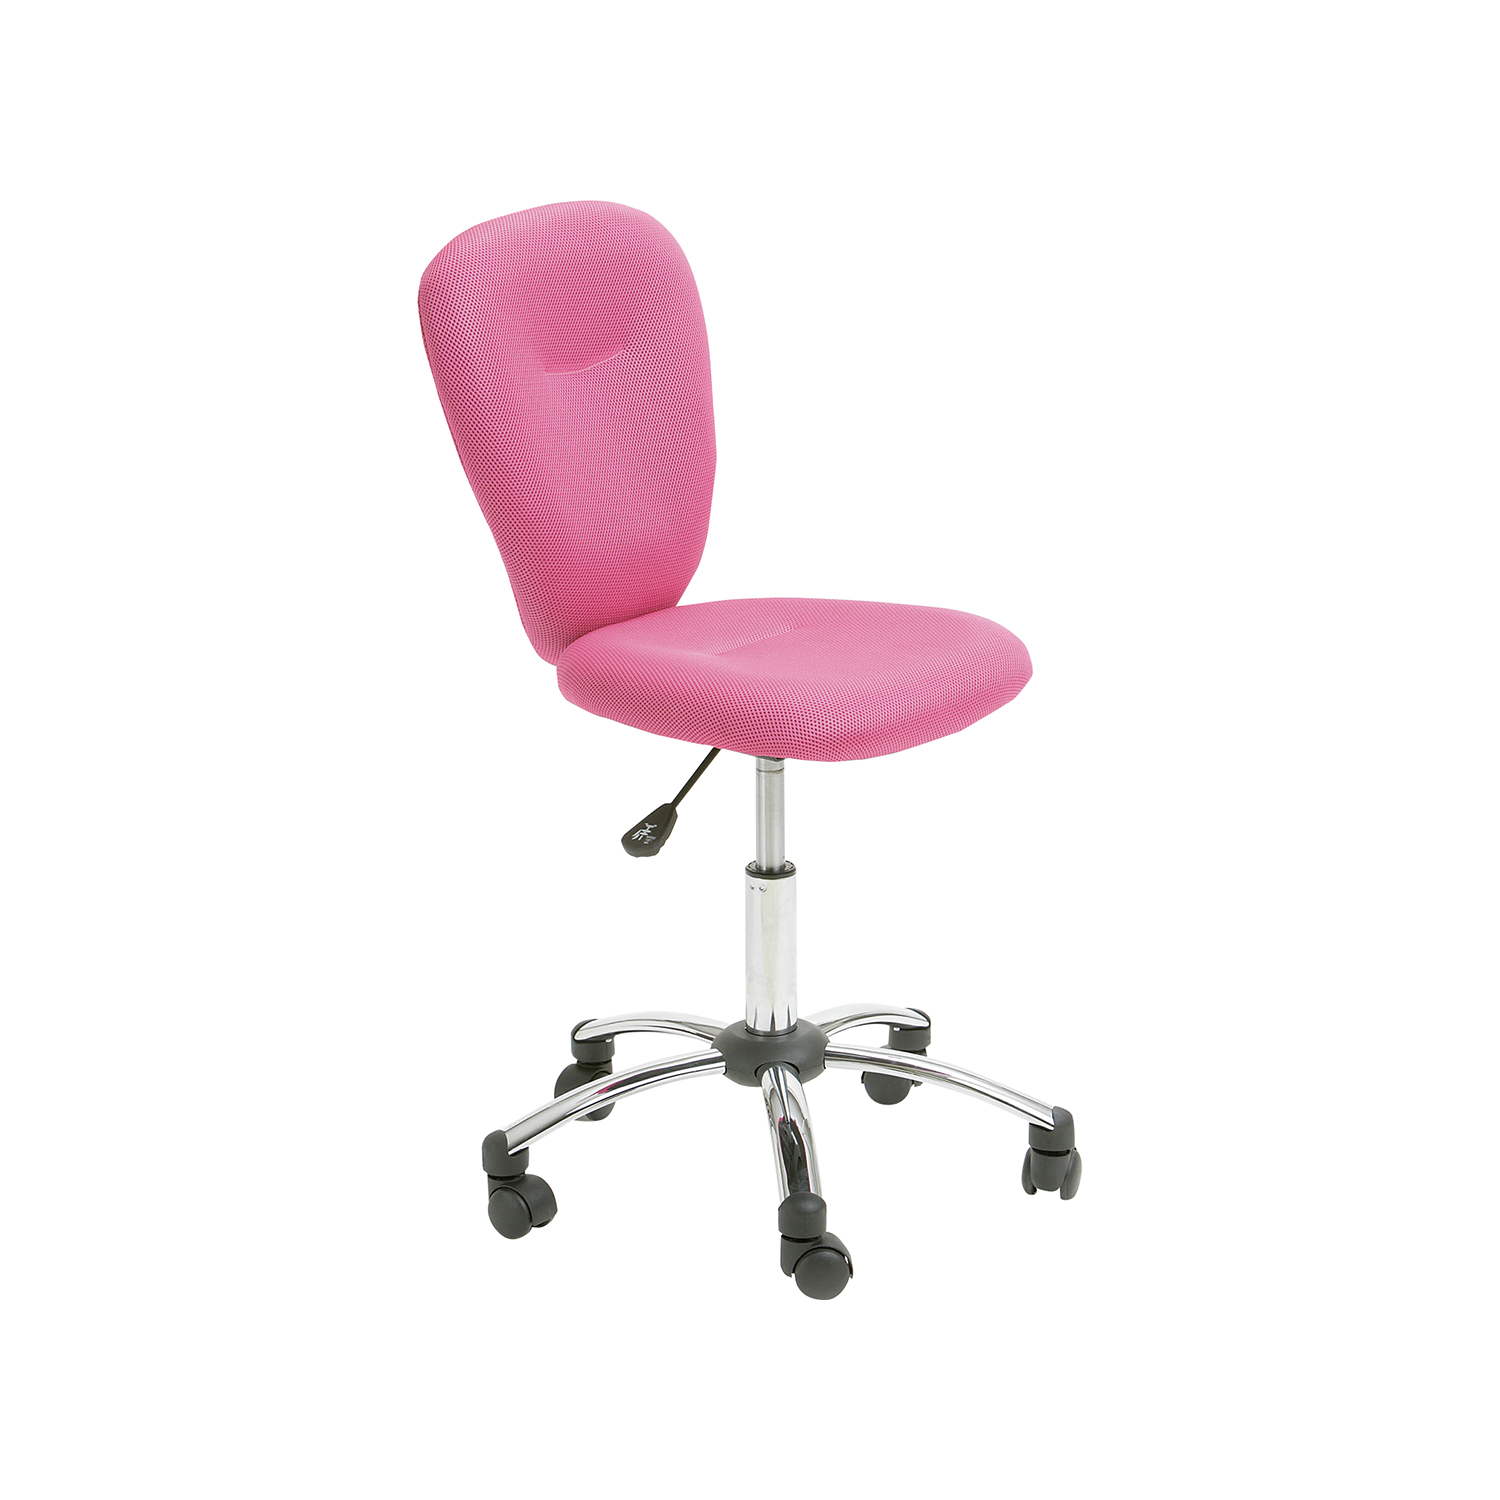 Kancelářská židle MALI růžová